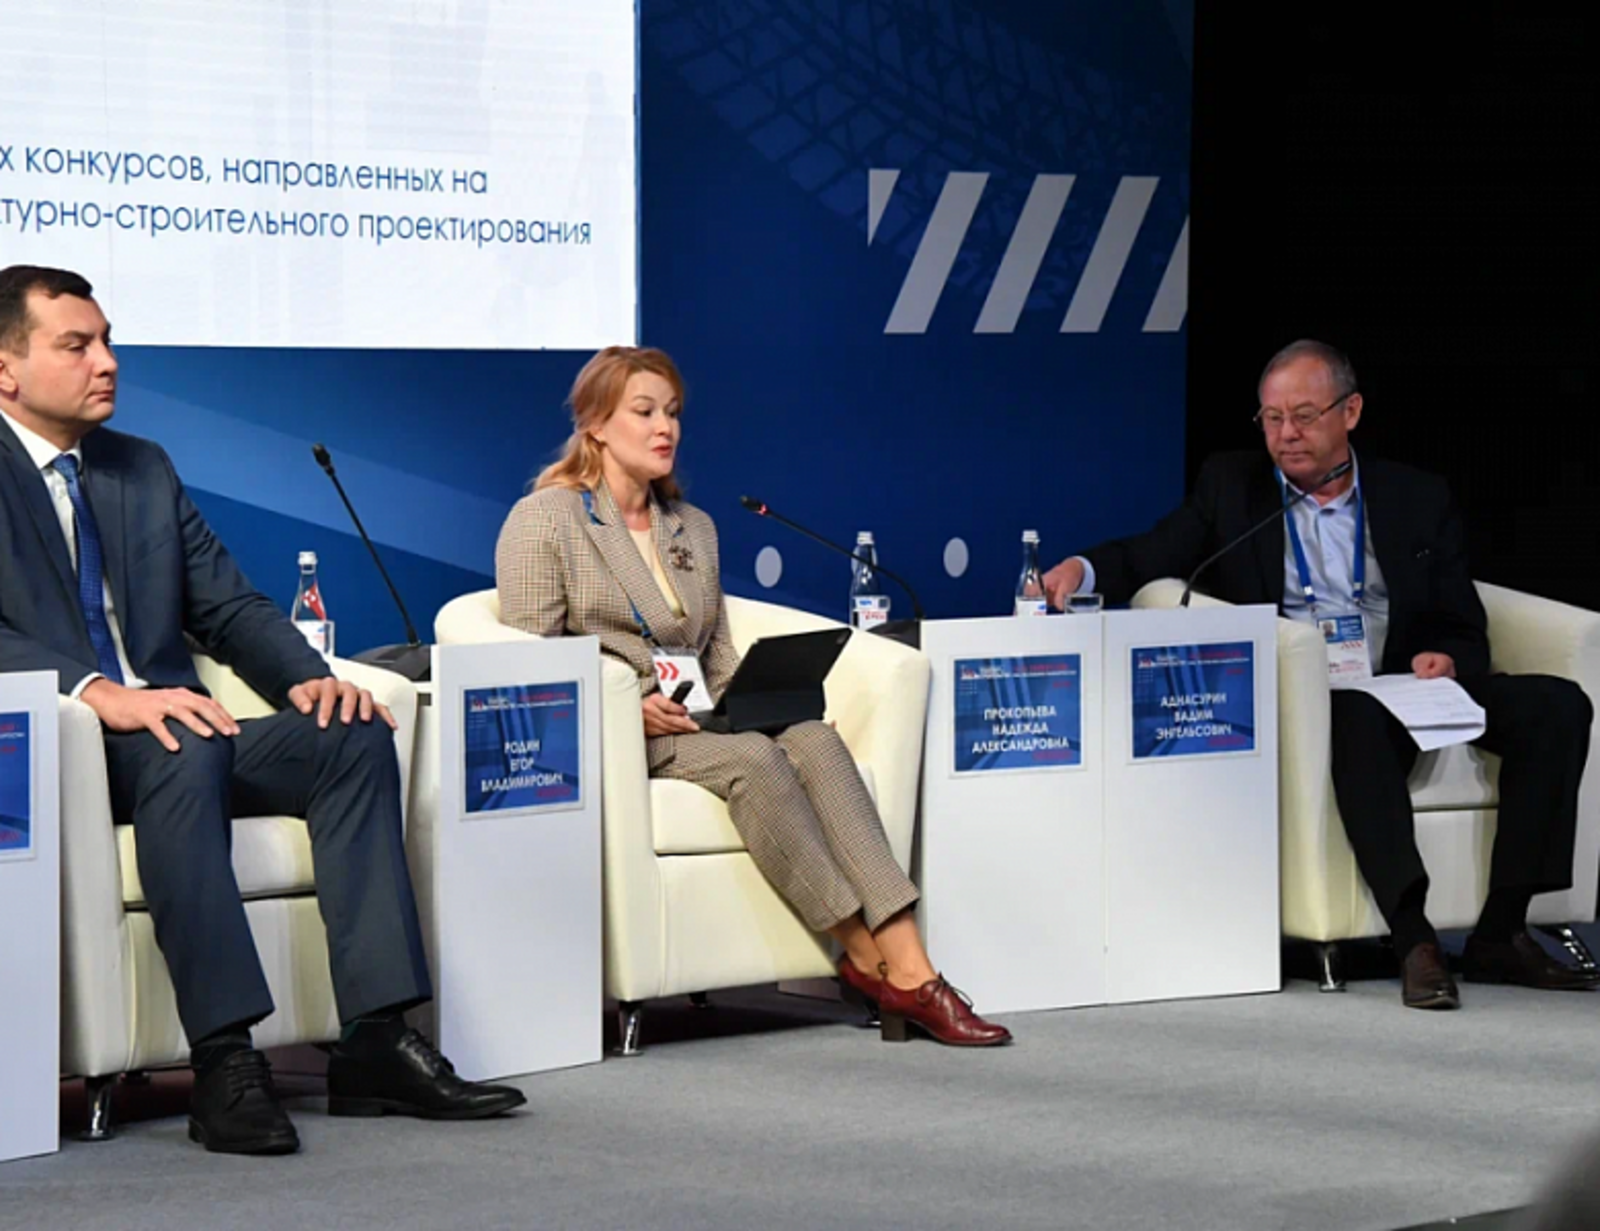 Андрей Назаров выступил на пленарном заседании международного конгресса «Транспорт и Строительство»